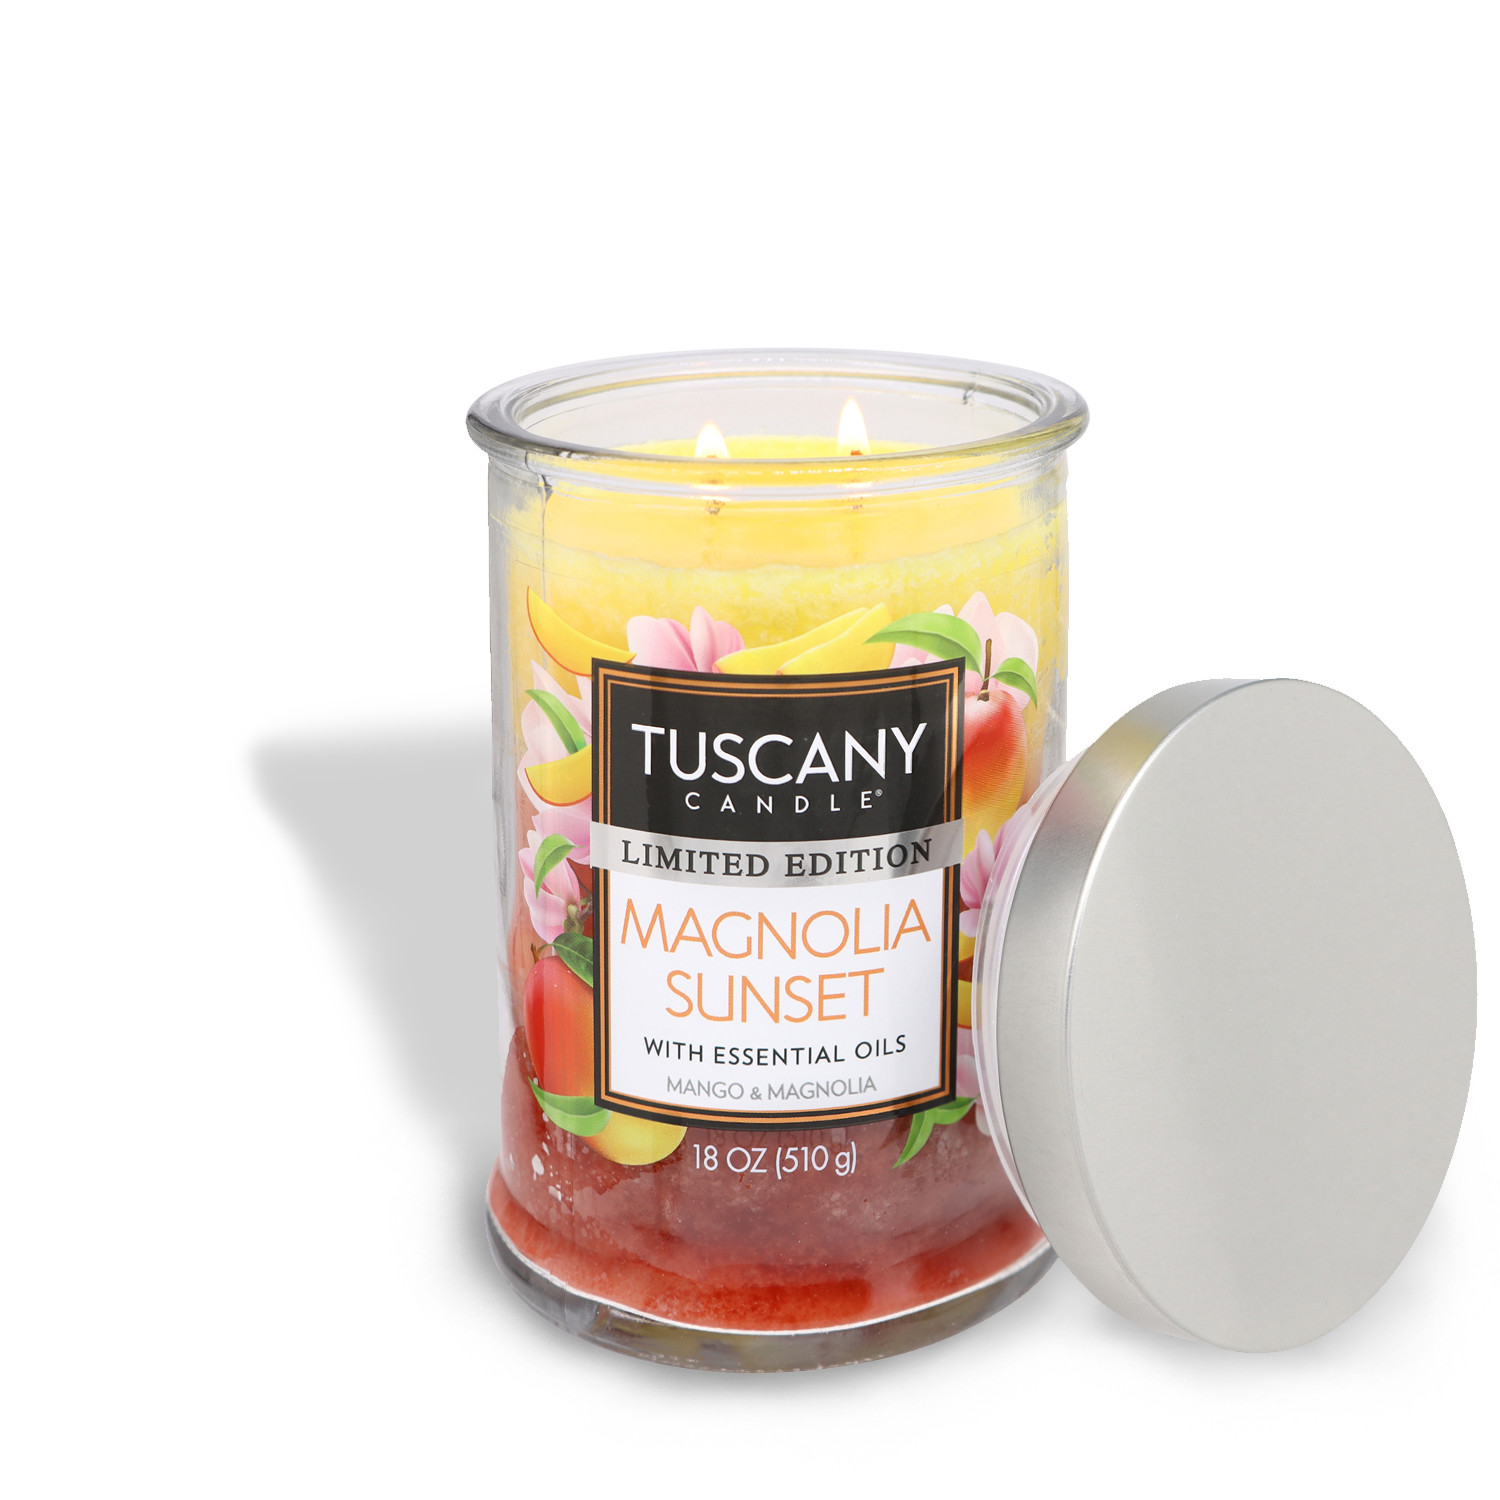 Magnolia Sunset Long-Lasting Scented Tuscany Candle® SEASONAL jar candle.